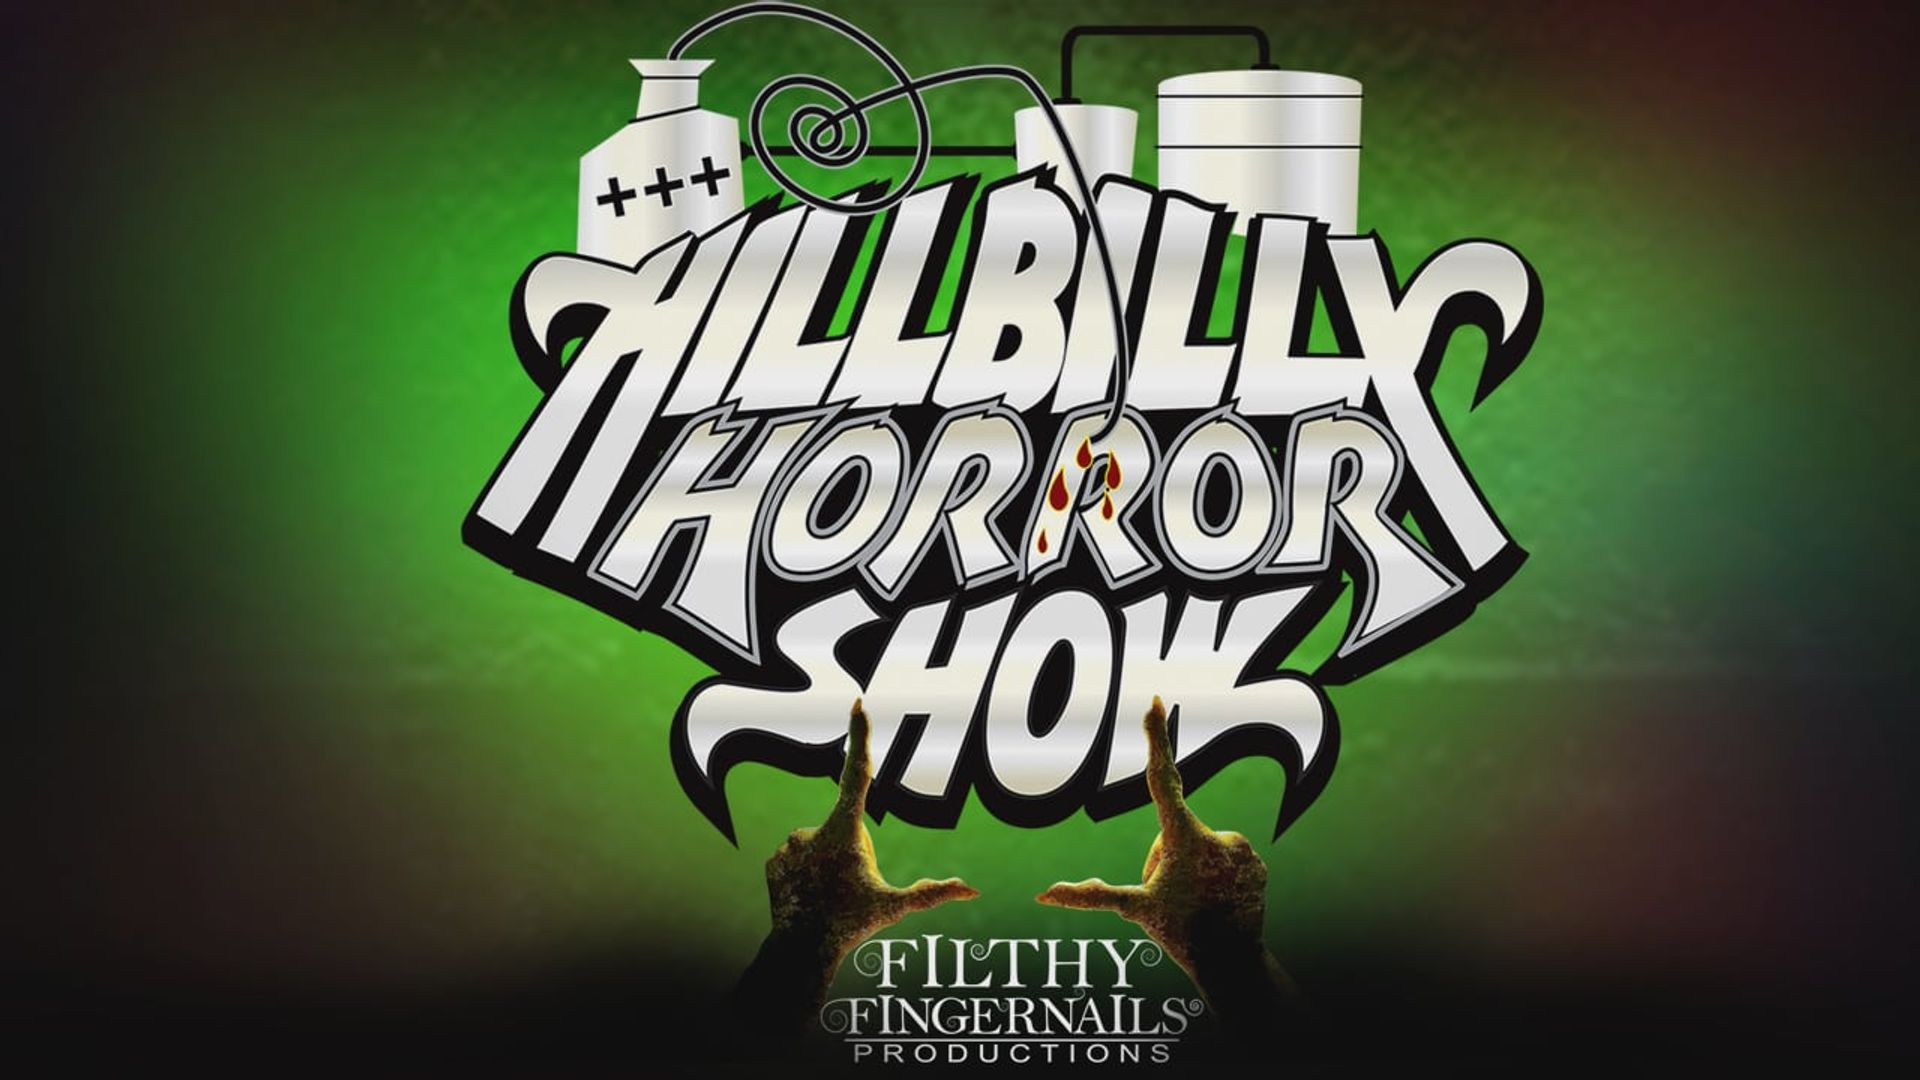 Hillbilly Horror Show background